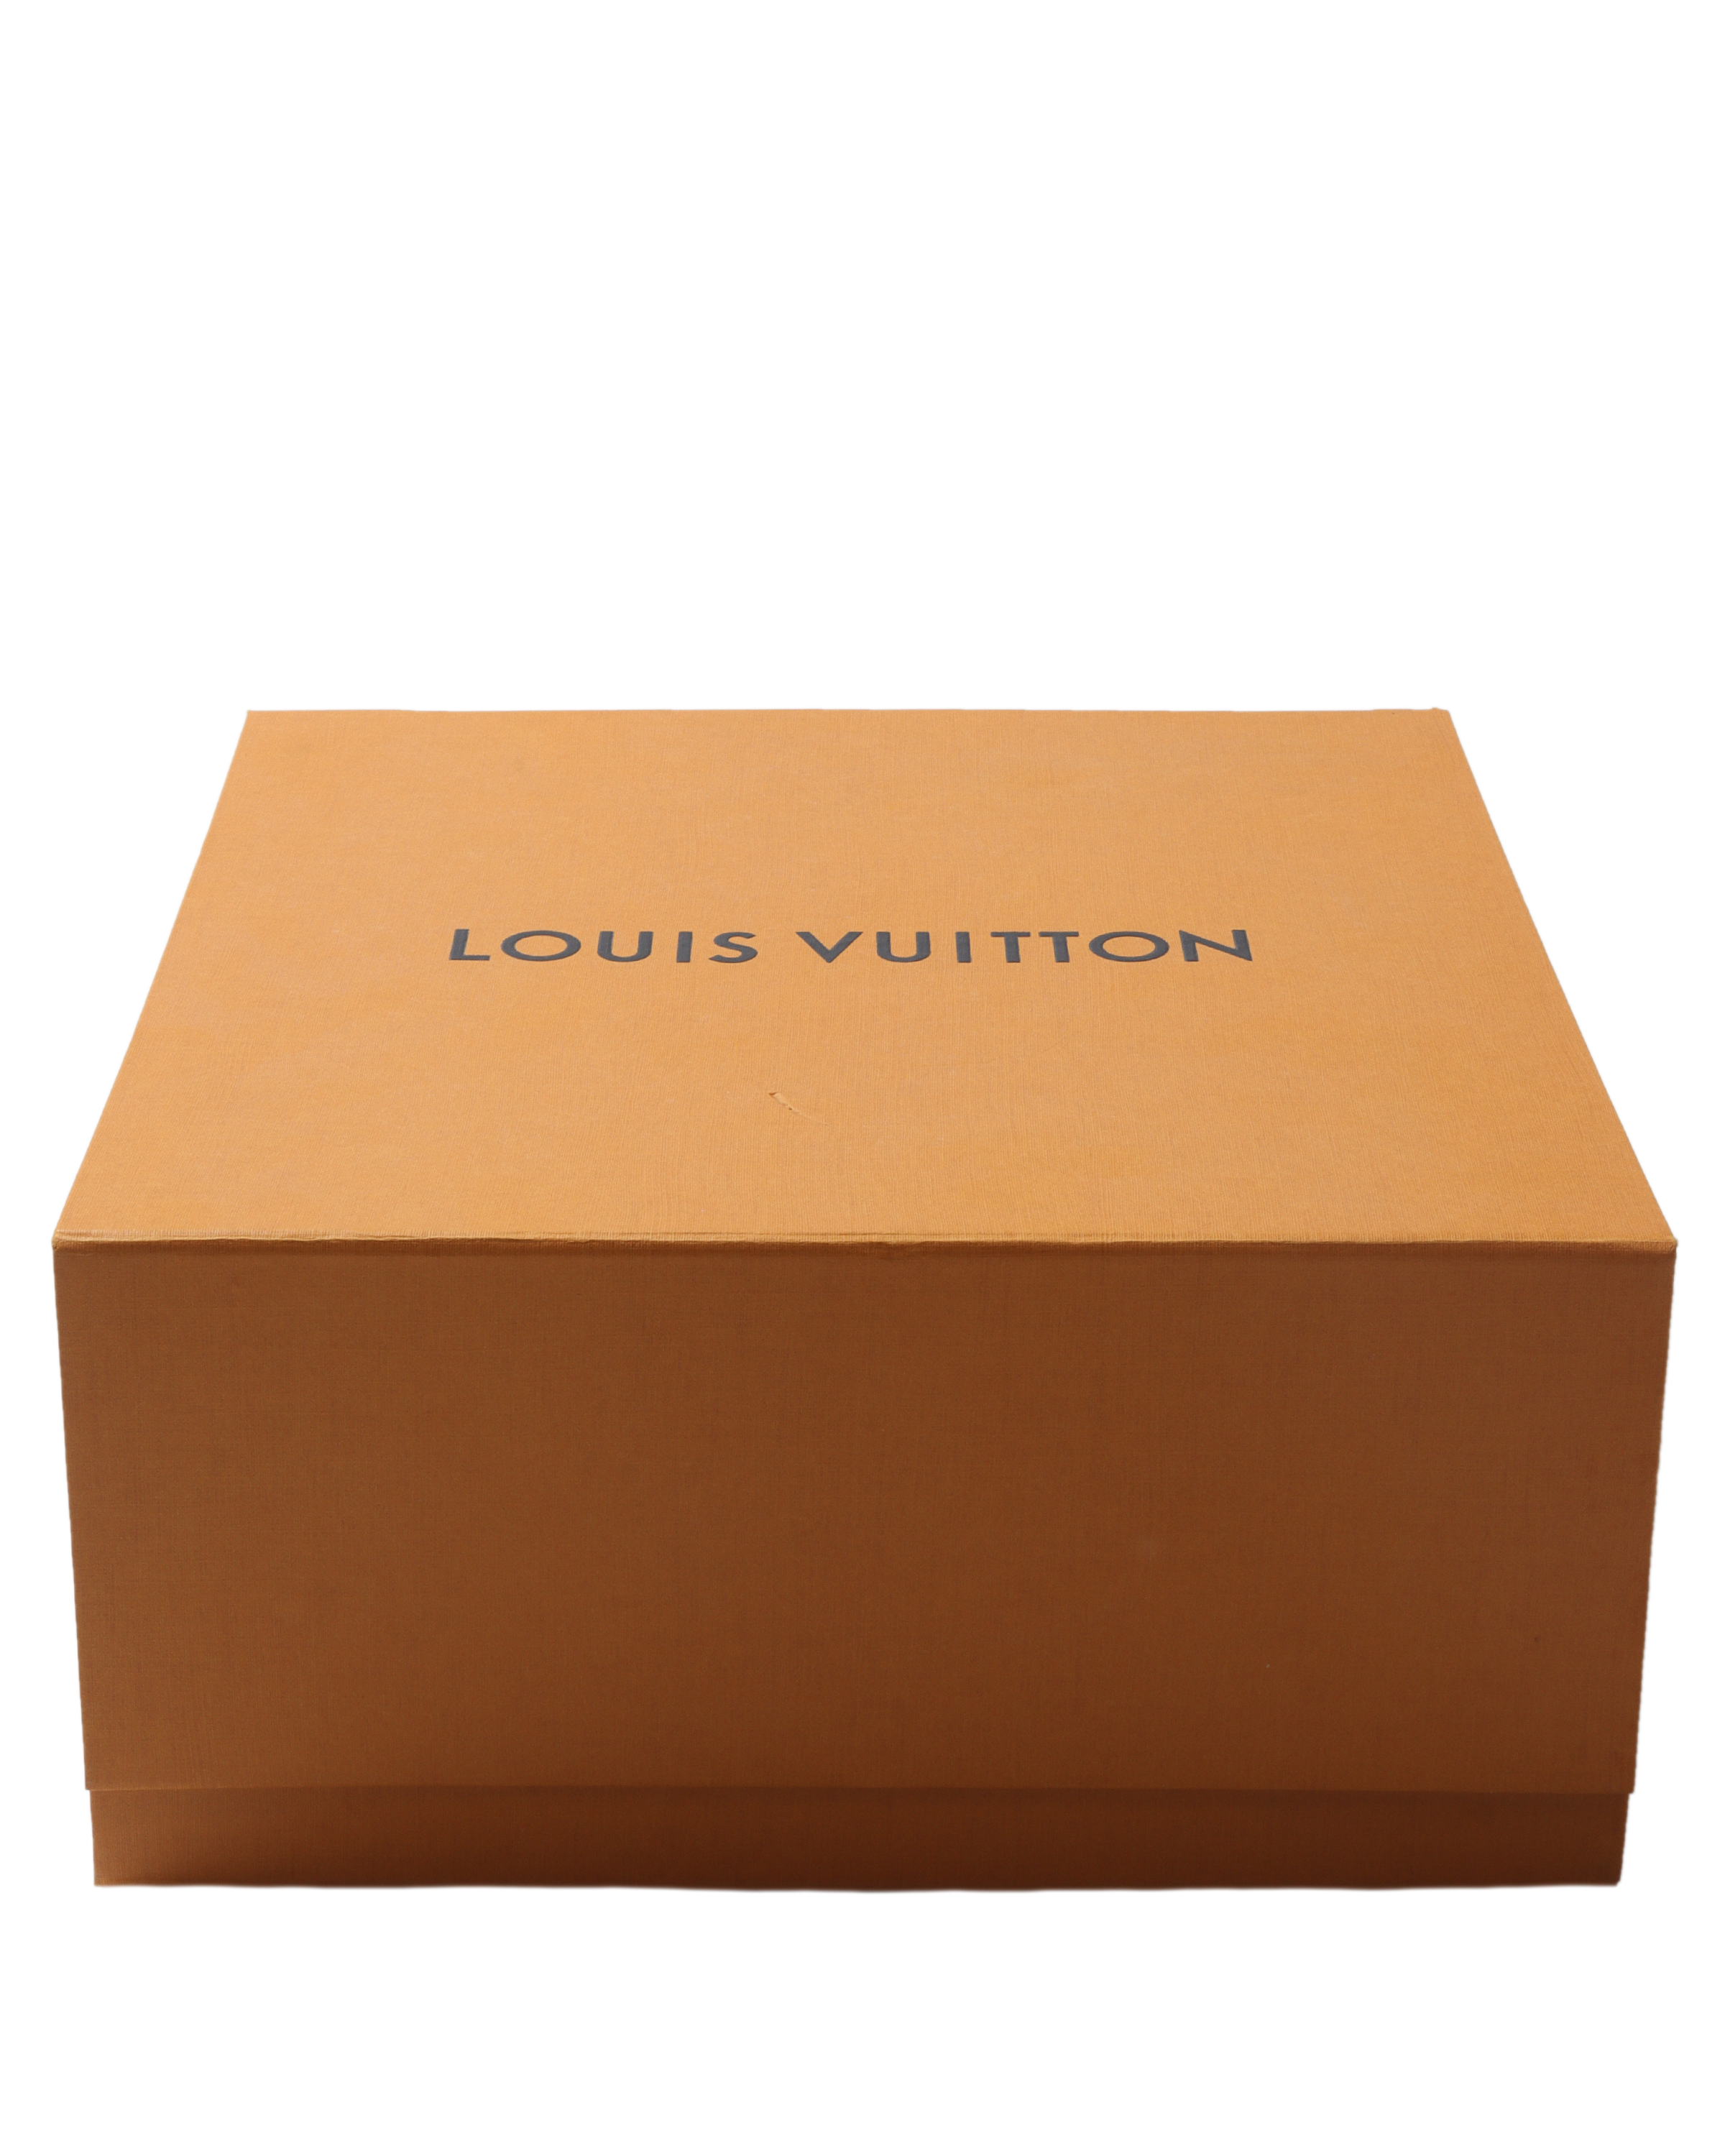 Louis Vuitton Vivienne Bride LV Epi Wood Mascot Figurine Doll